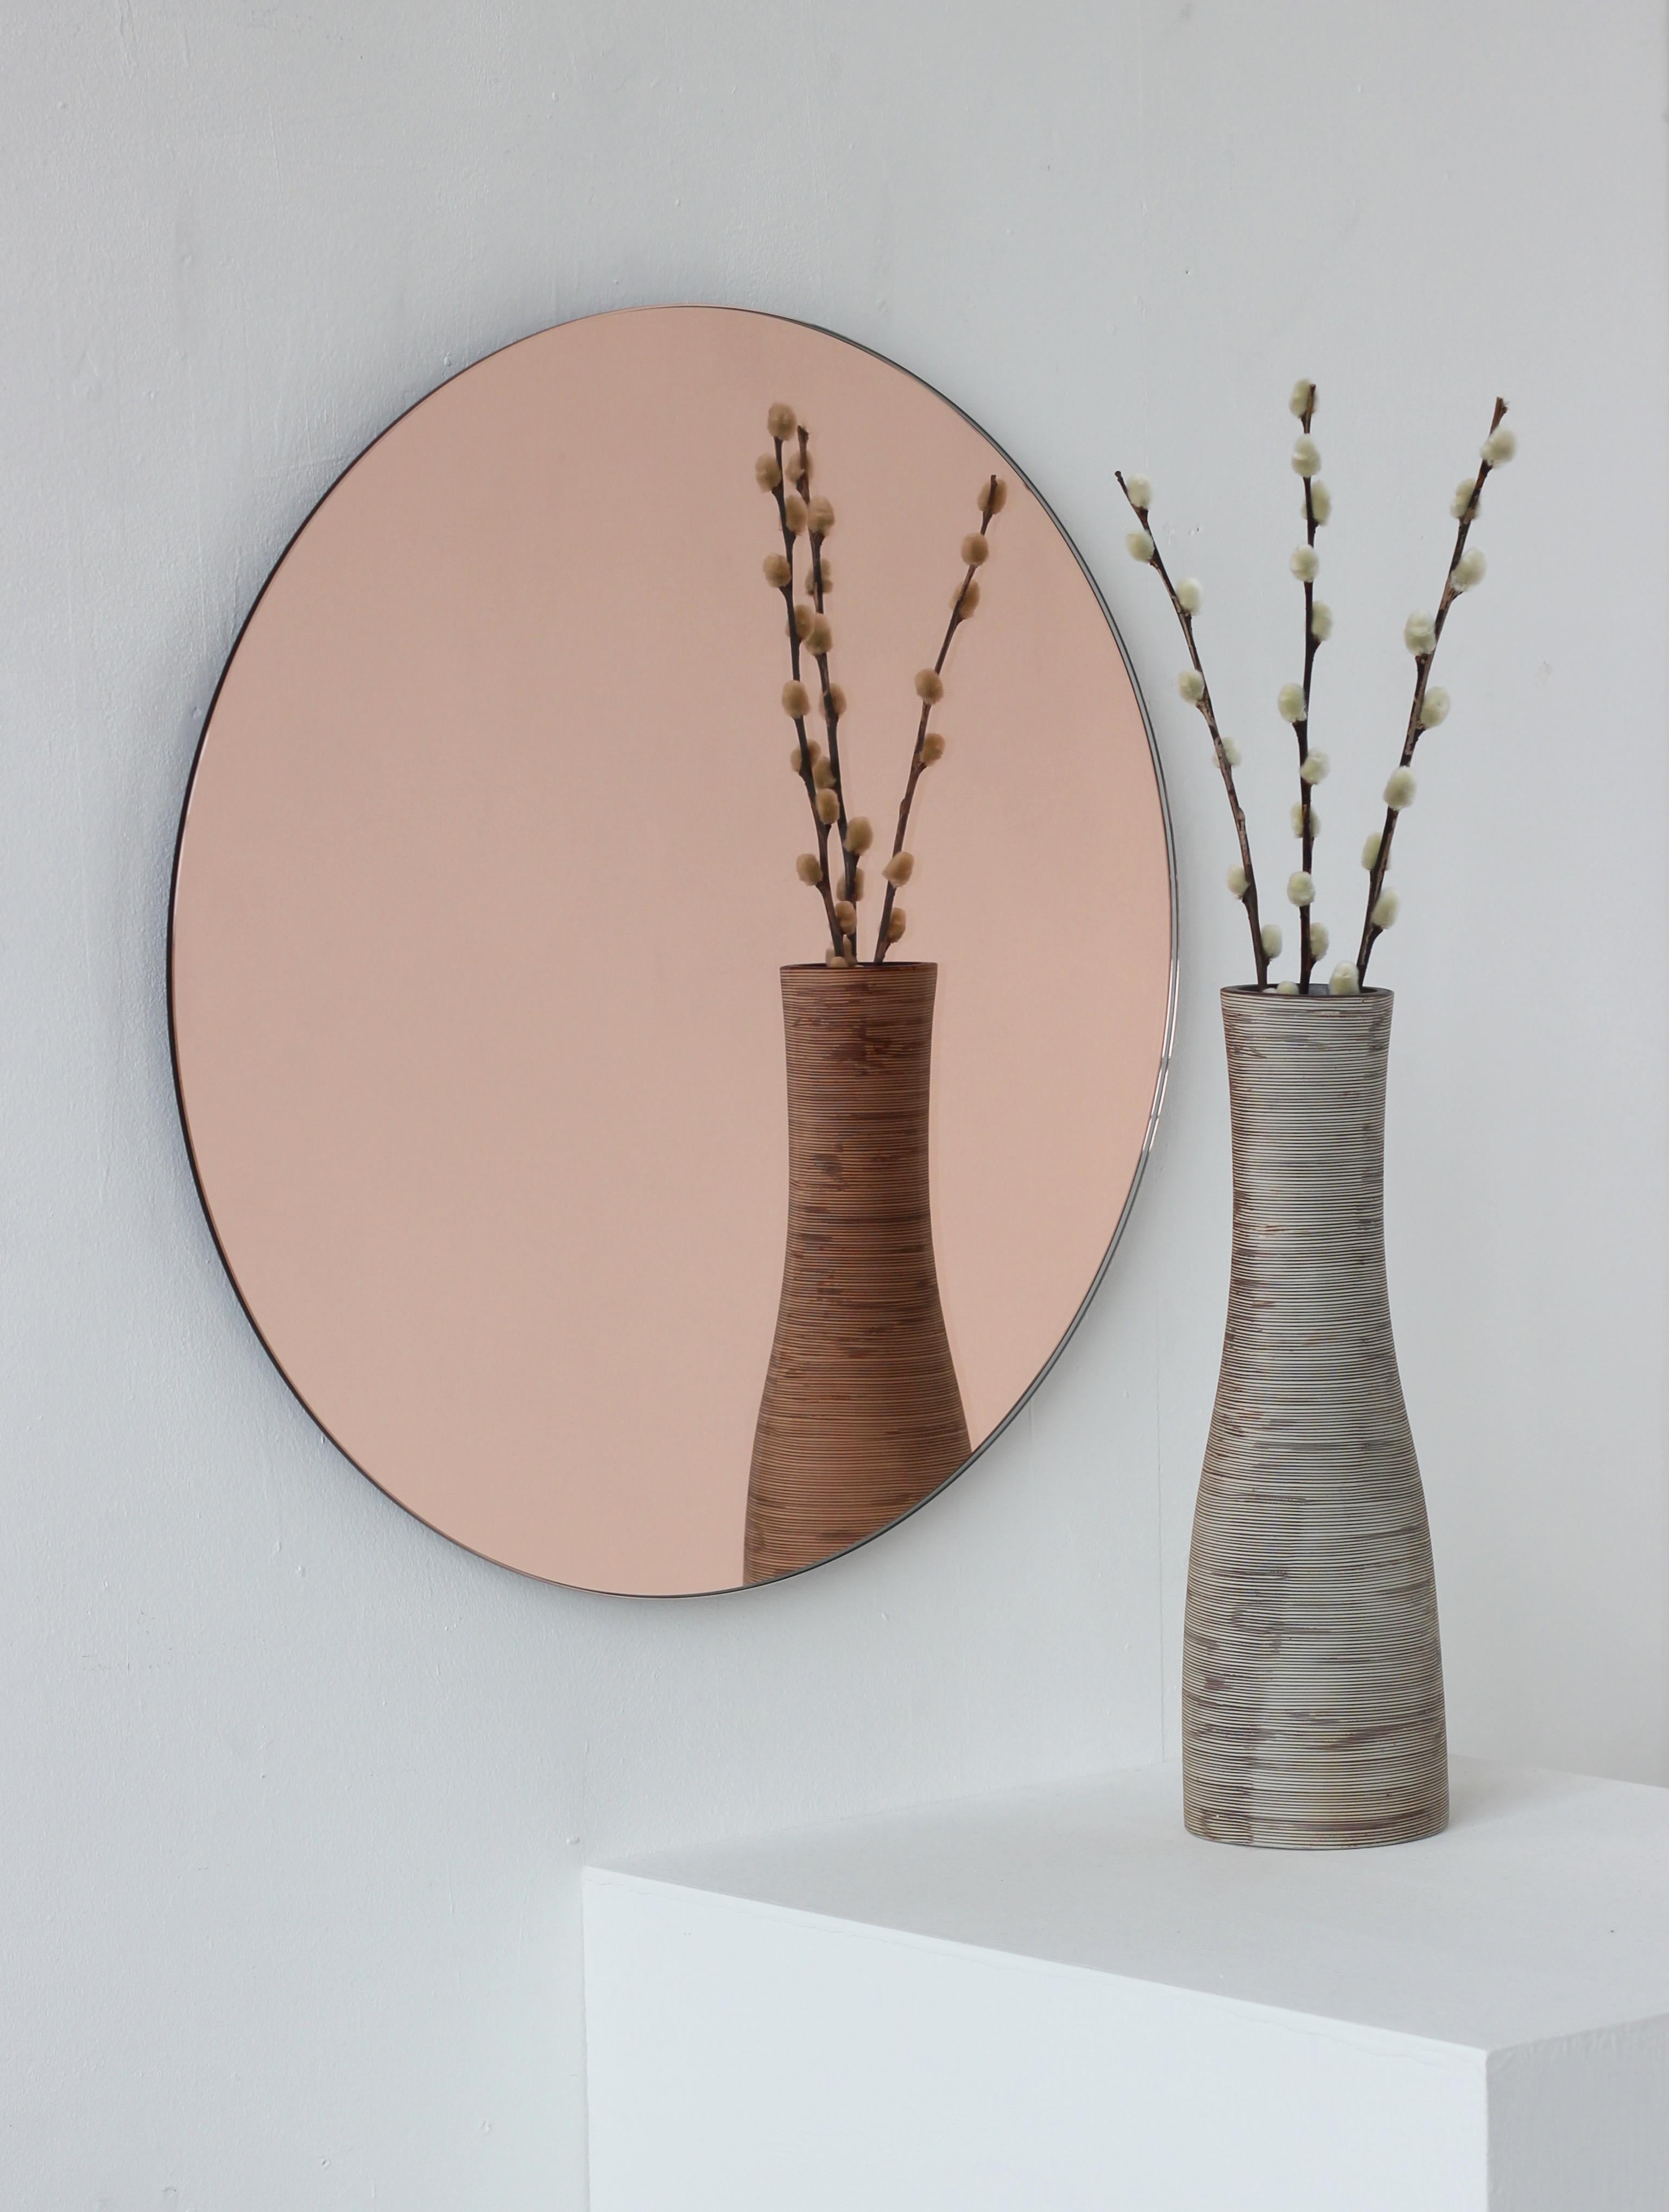 Charmant et minimaliste miroir rond Orbis™ sans cadre teinté or rose / pêche avec un effet flottant. Un design de qualité qui garantit que le miroir est parfaitement parallèle au mur. Conçu et fabriqué à Londres, au Royaume-Uni.

Equipé de plaques